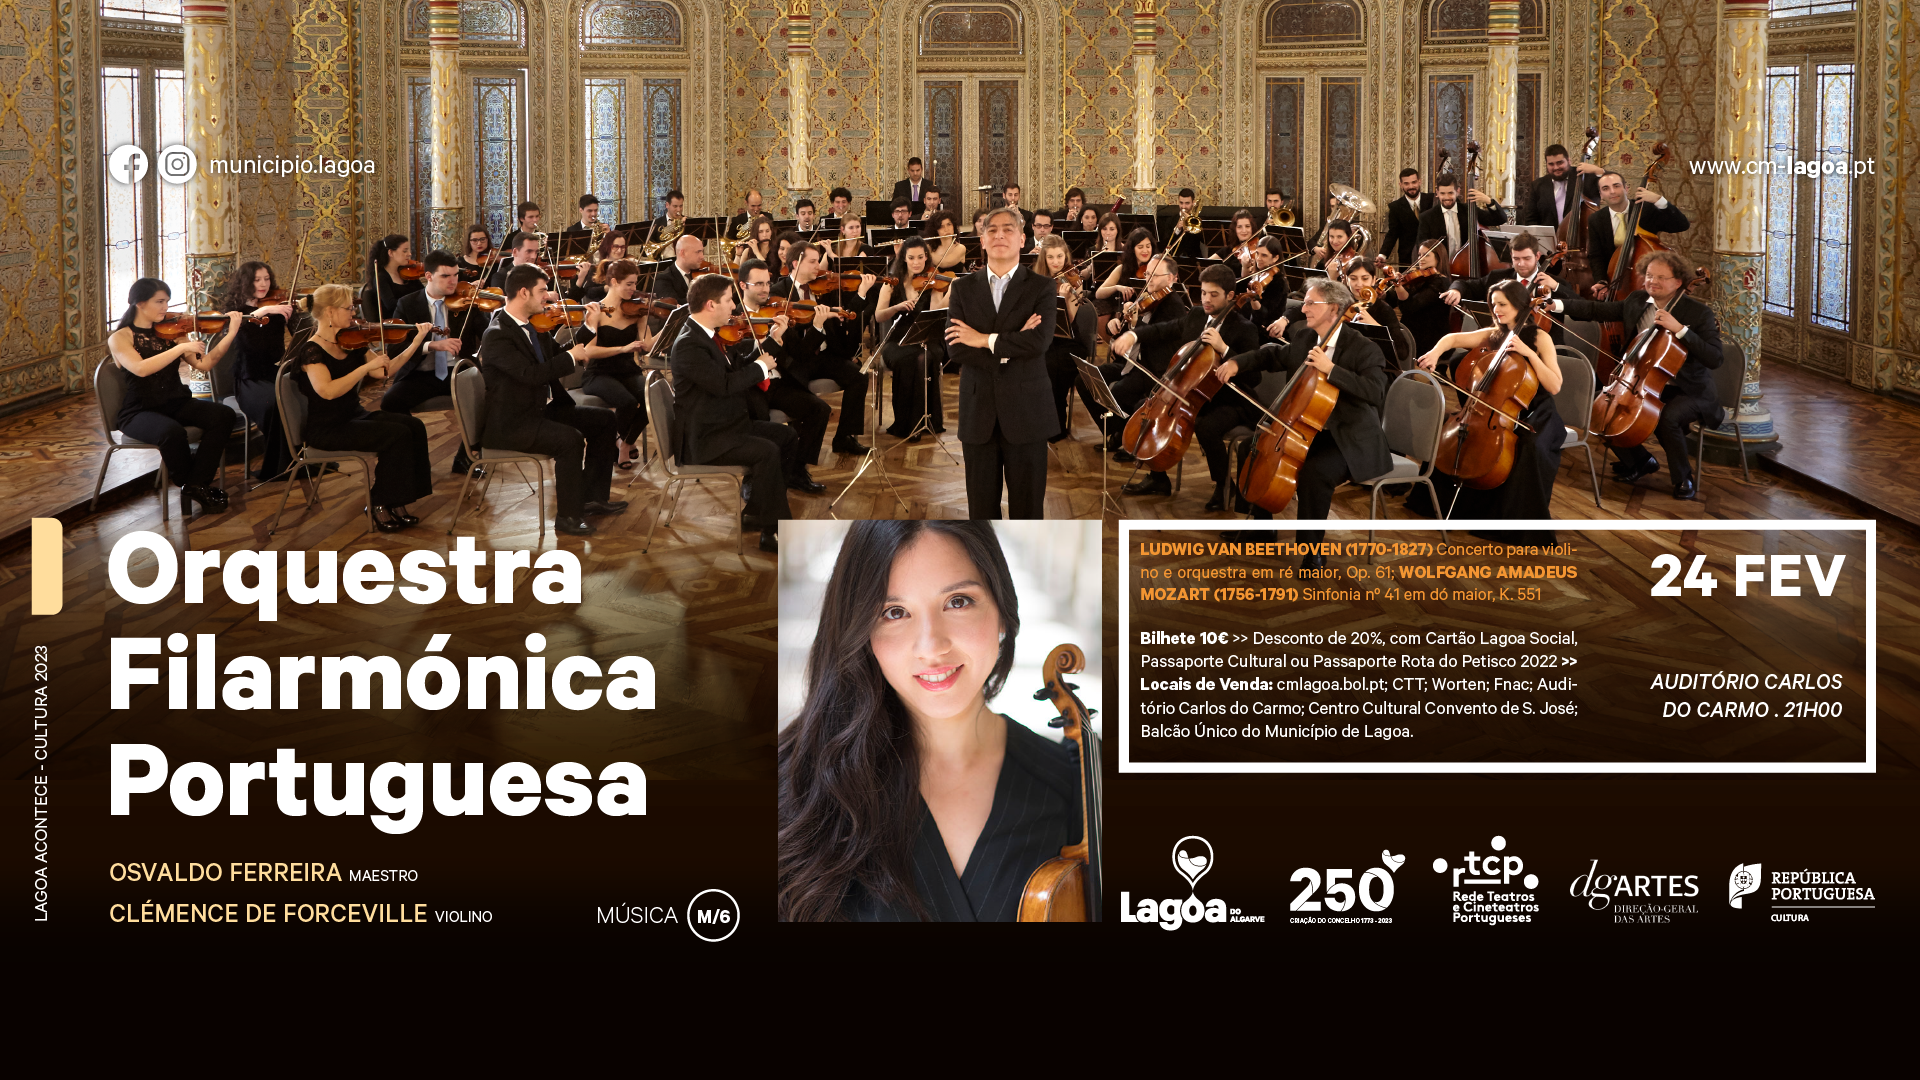 Orquestra Filarmónica Portuguesa & Clémence de Forceville